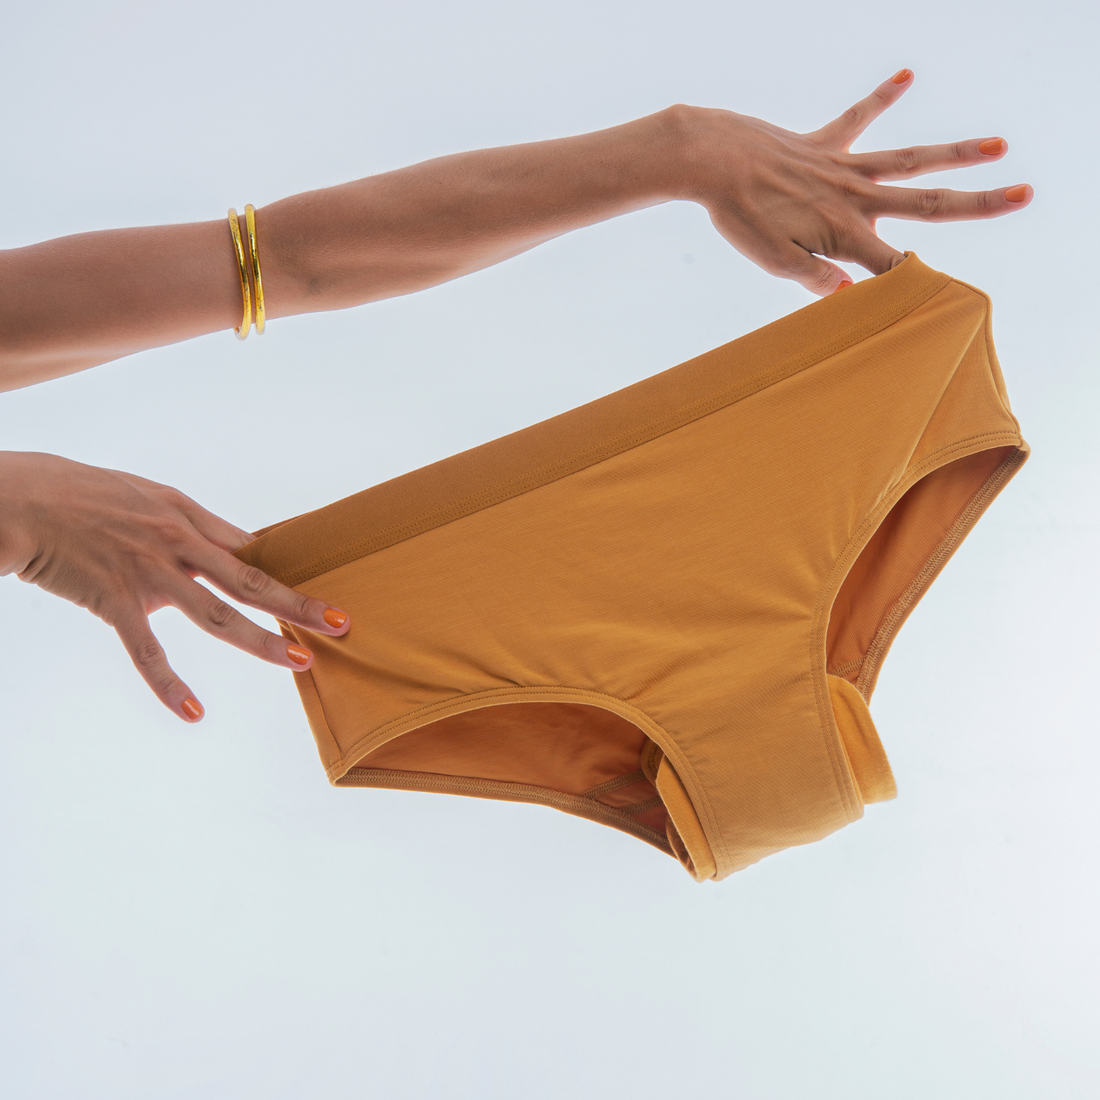 Period underwear for teens